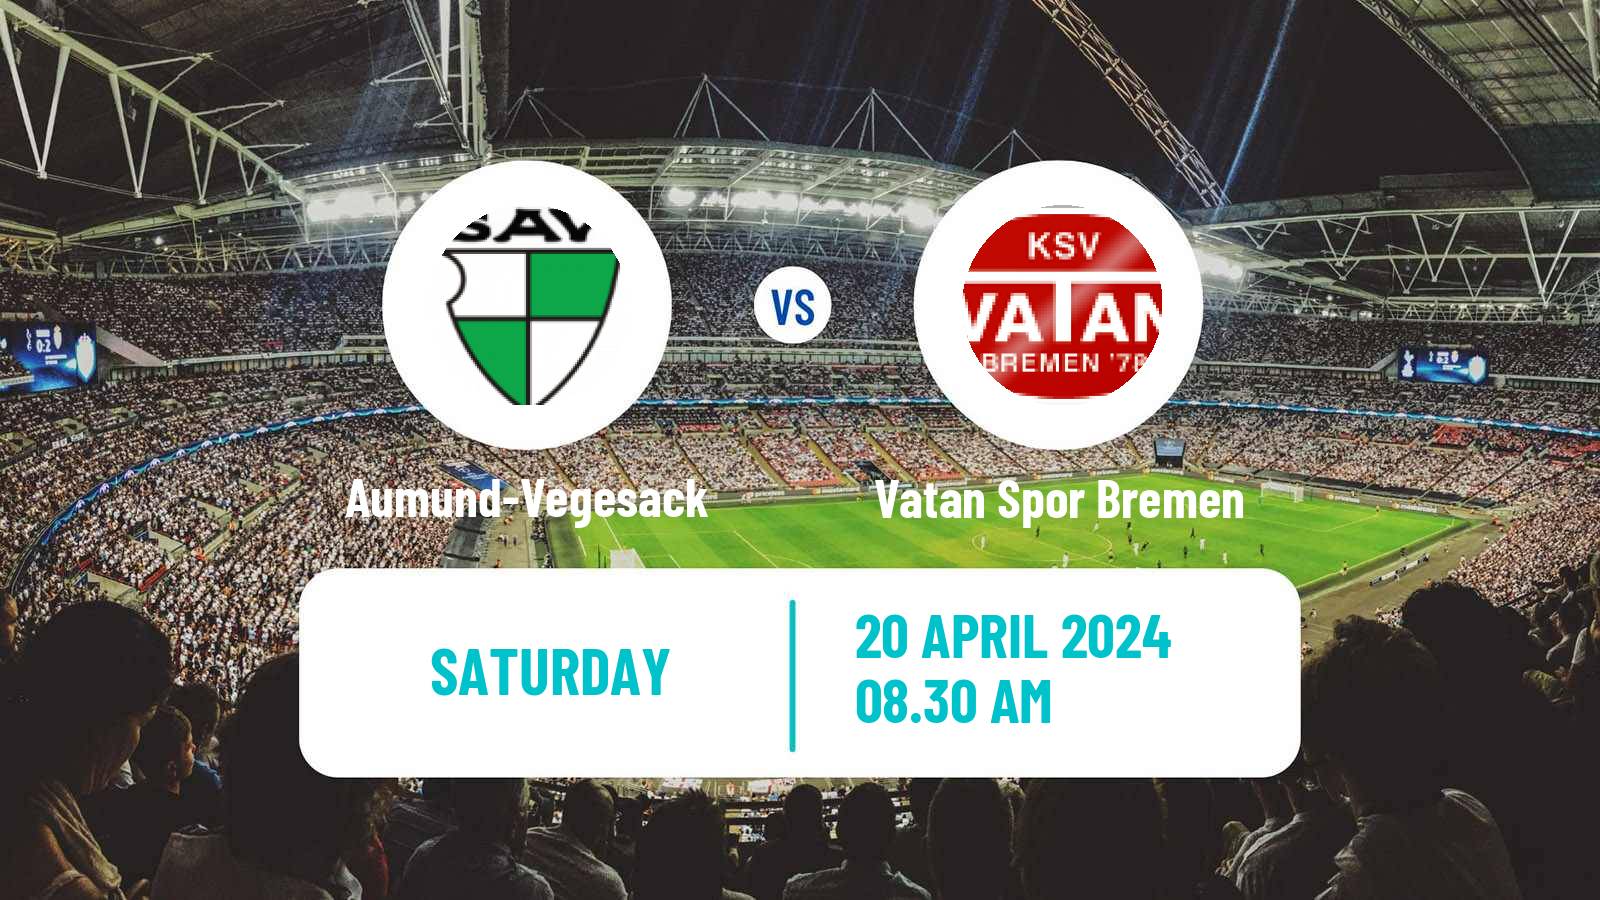 Soccer German Oberliga Bremen Aumund-Vegesack - Vatan Spor Bremen